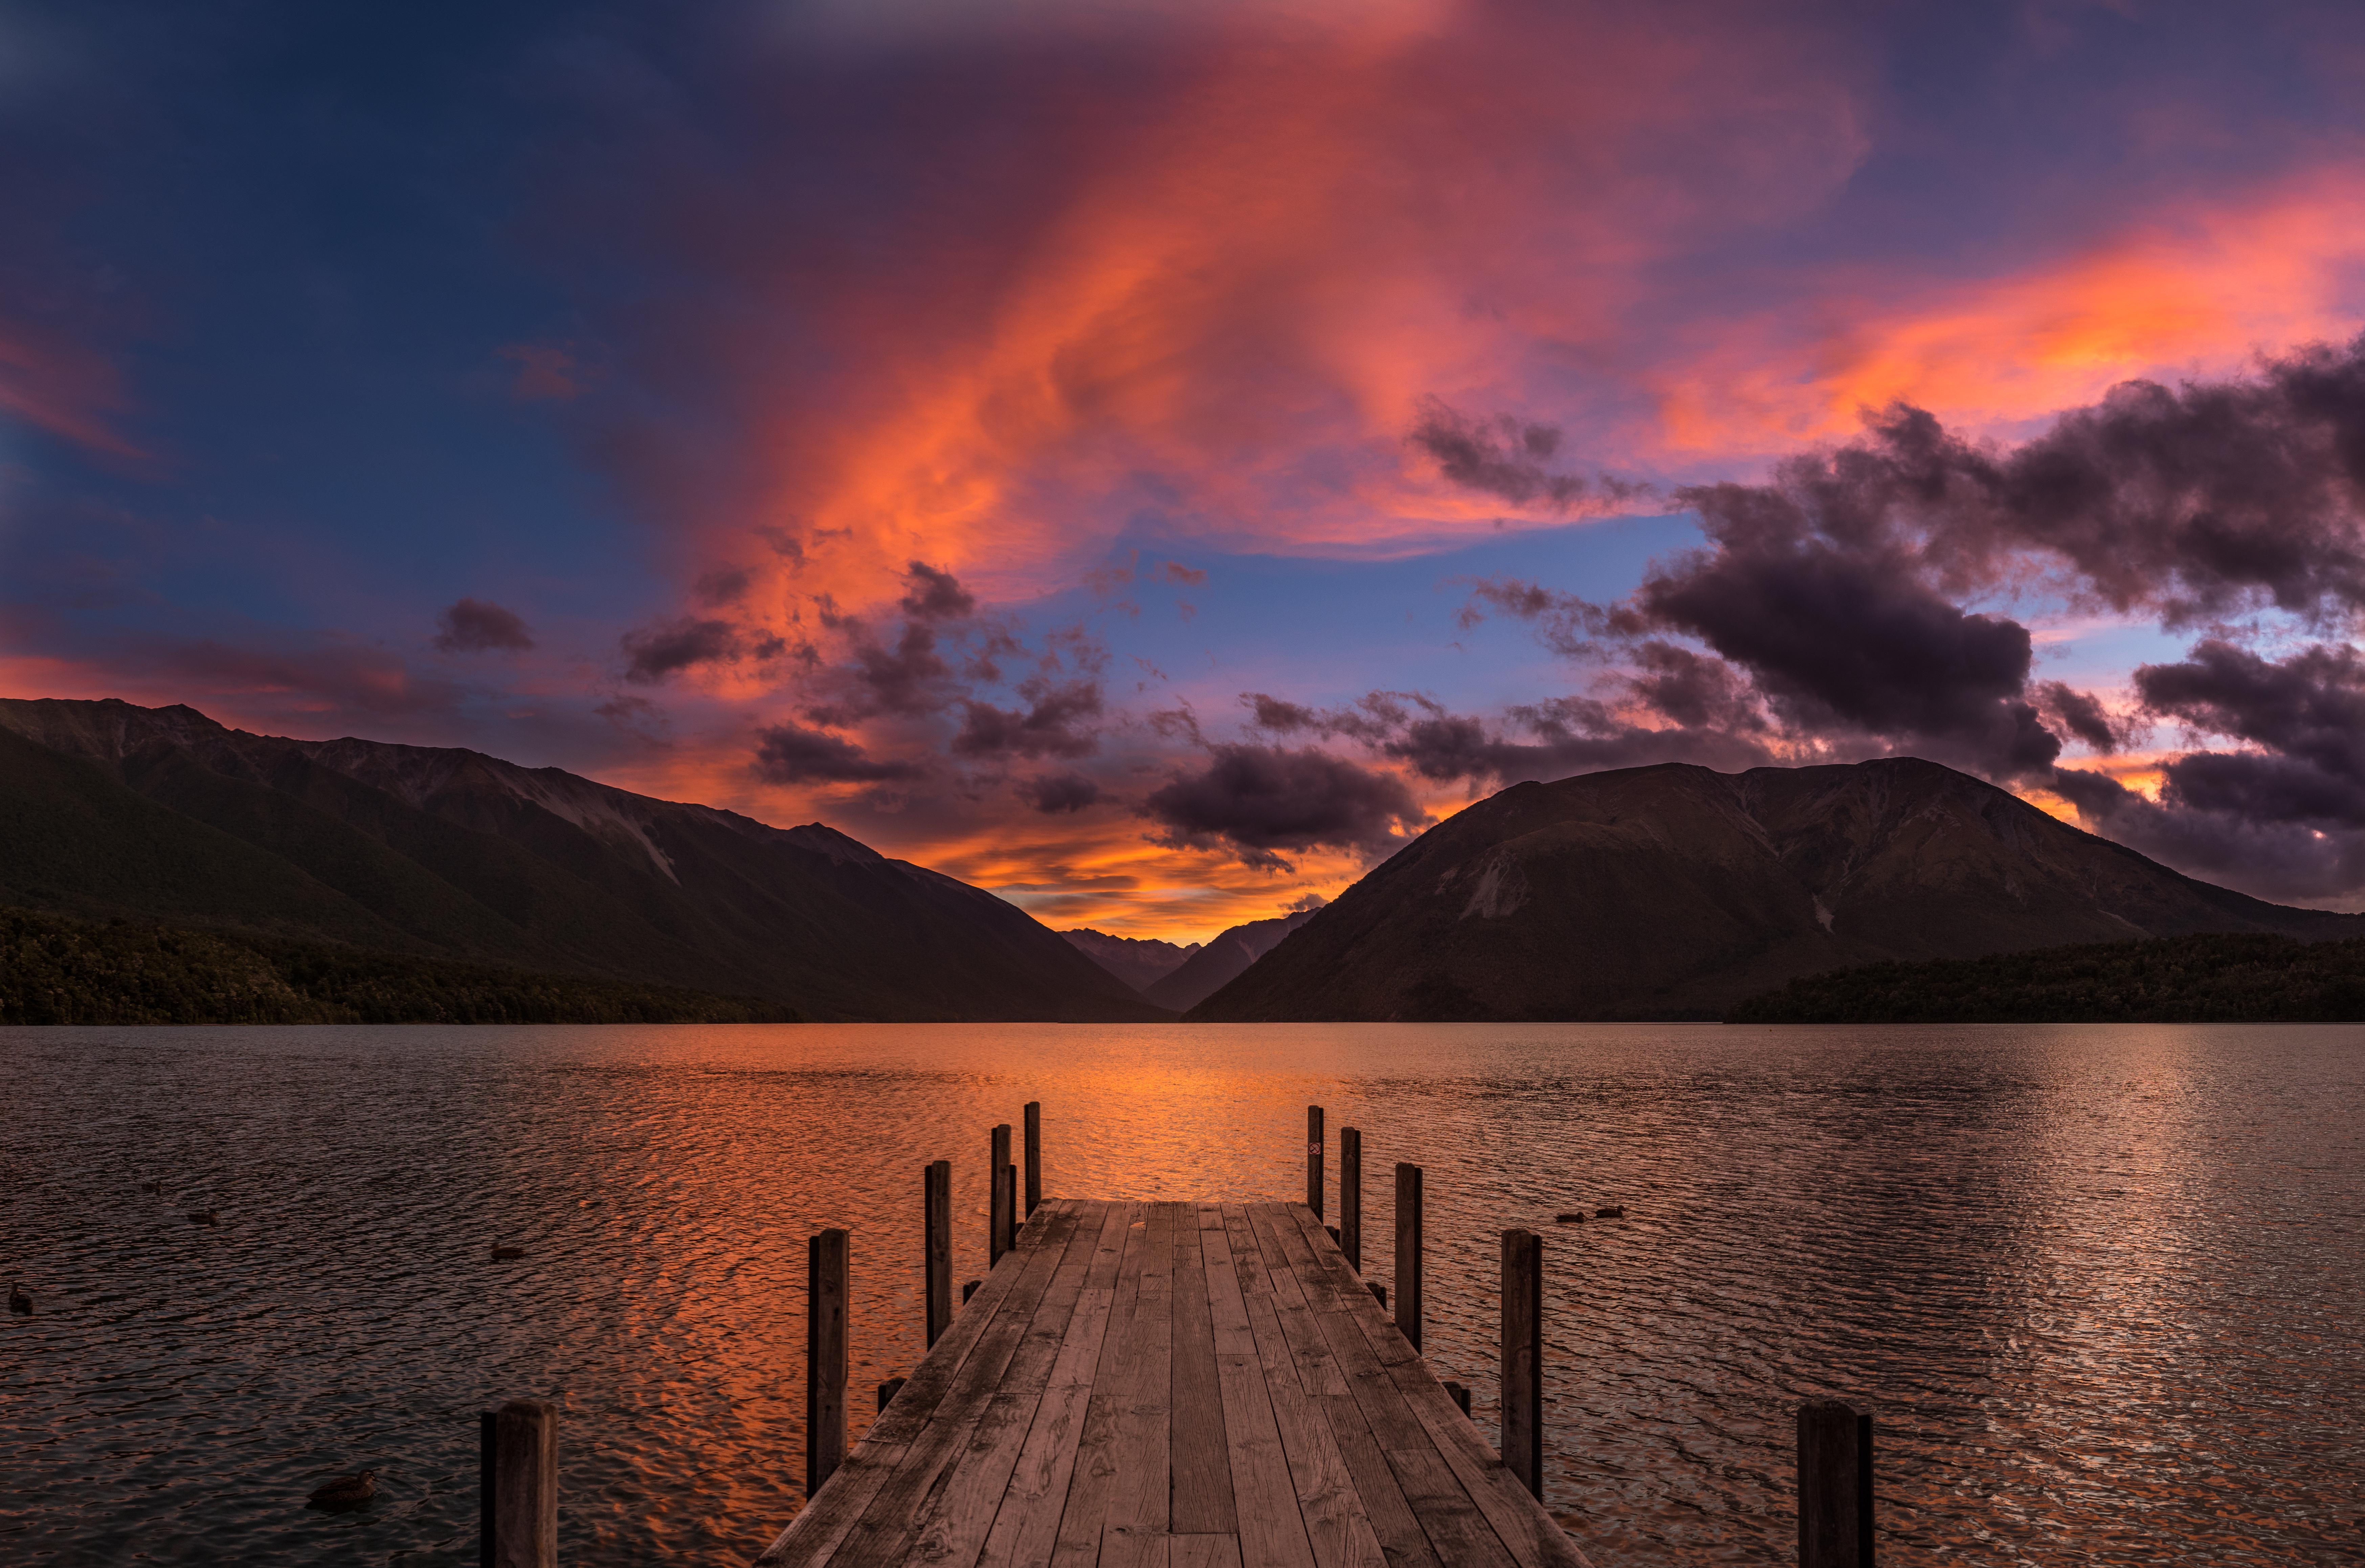 Magical sunset at Lake Rotoiti, New Zealand 6989x4635